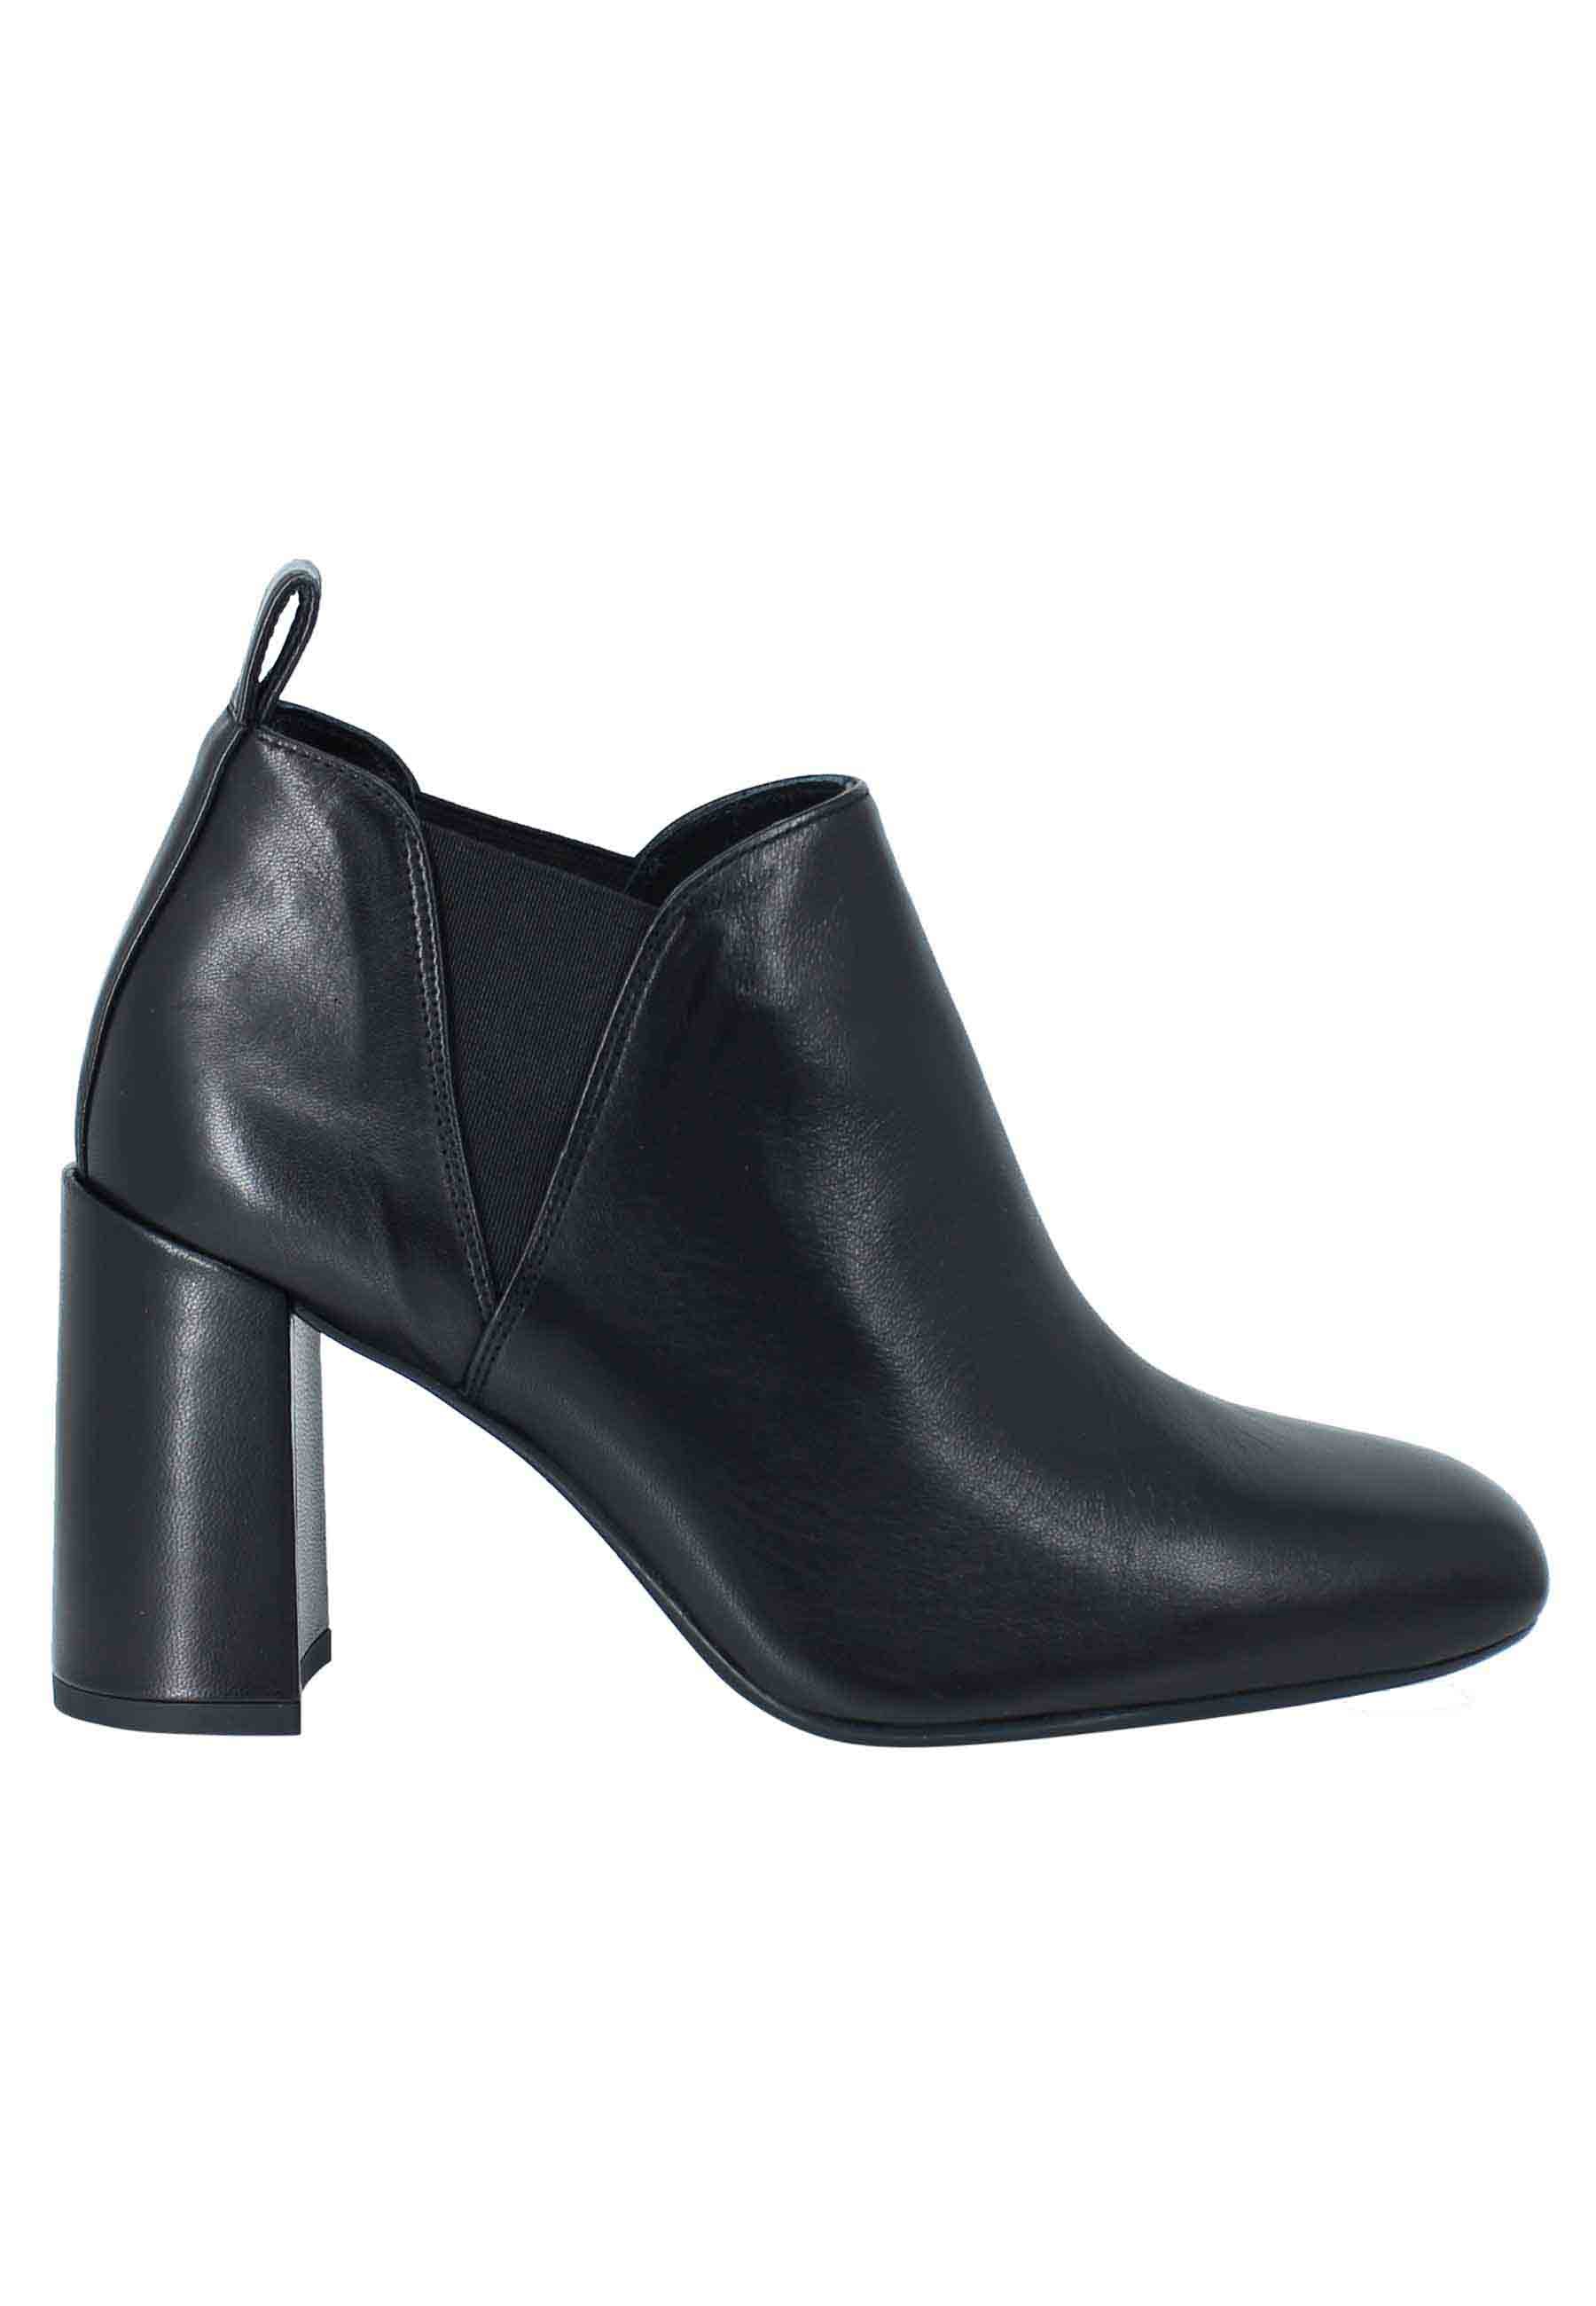 Stivaletti ankle boot donna in pelle nera tacco alto e punta quadra